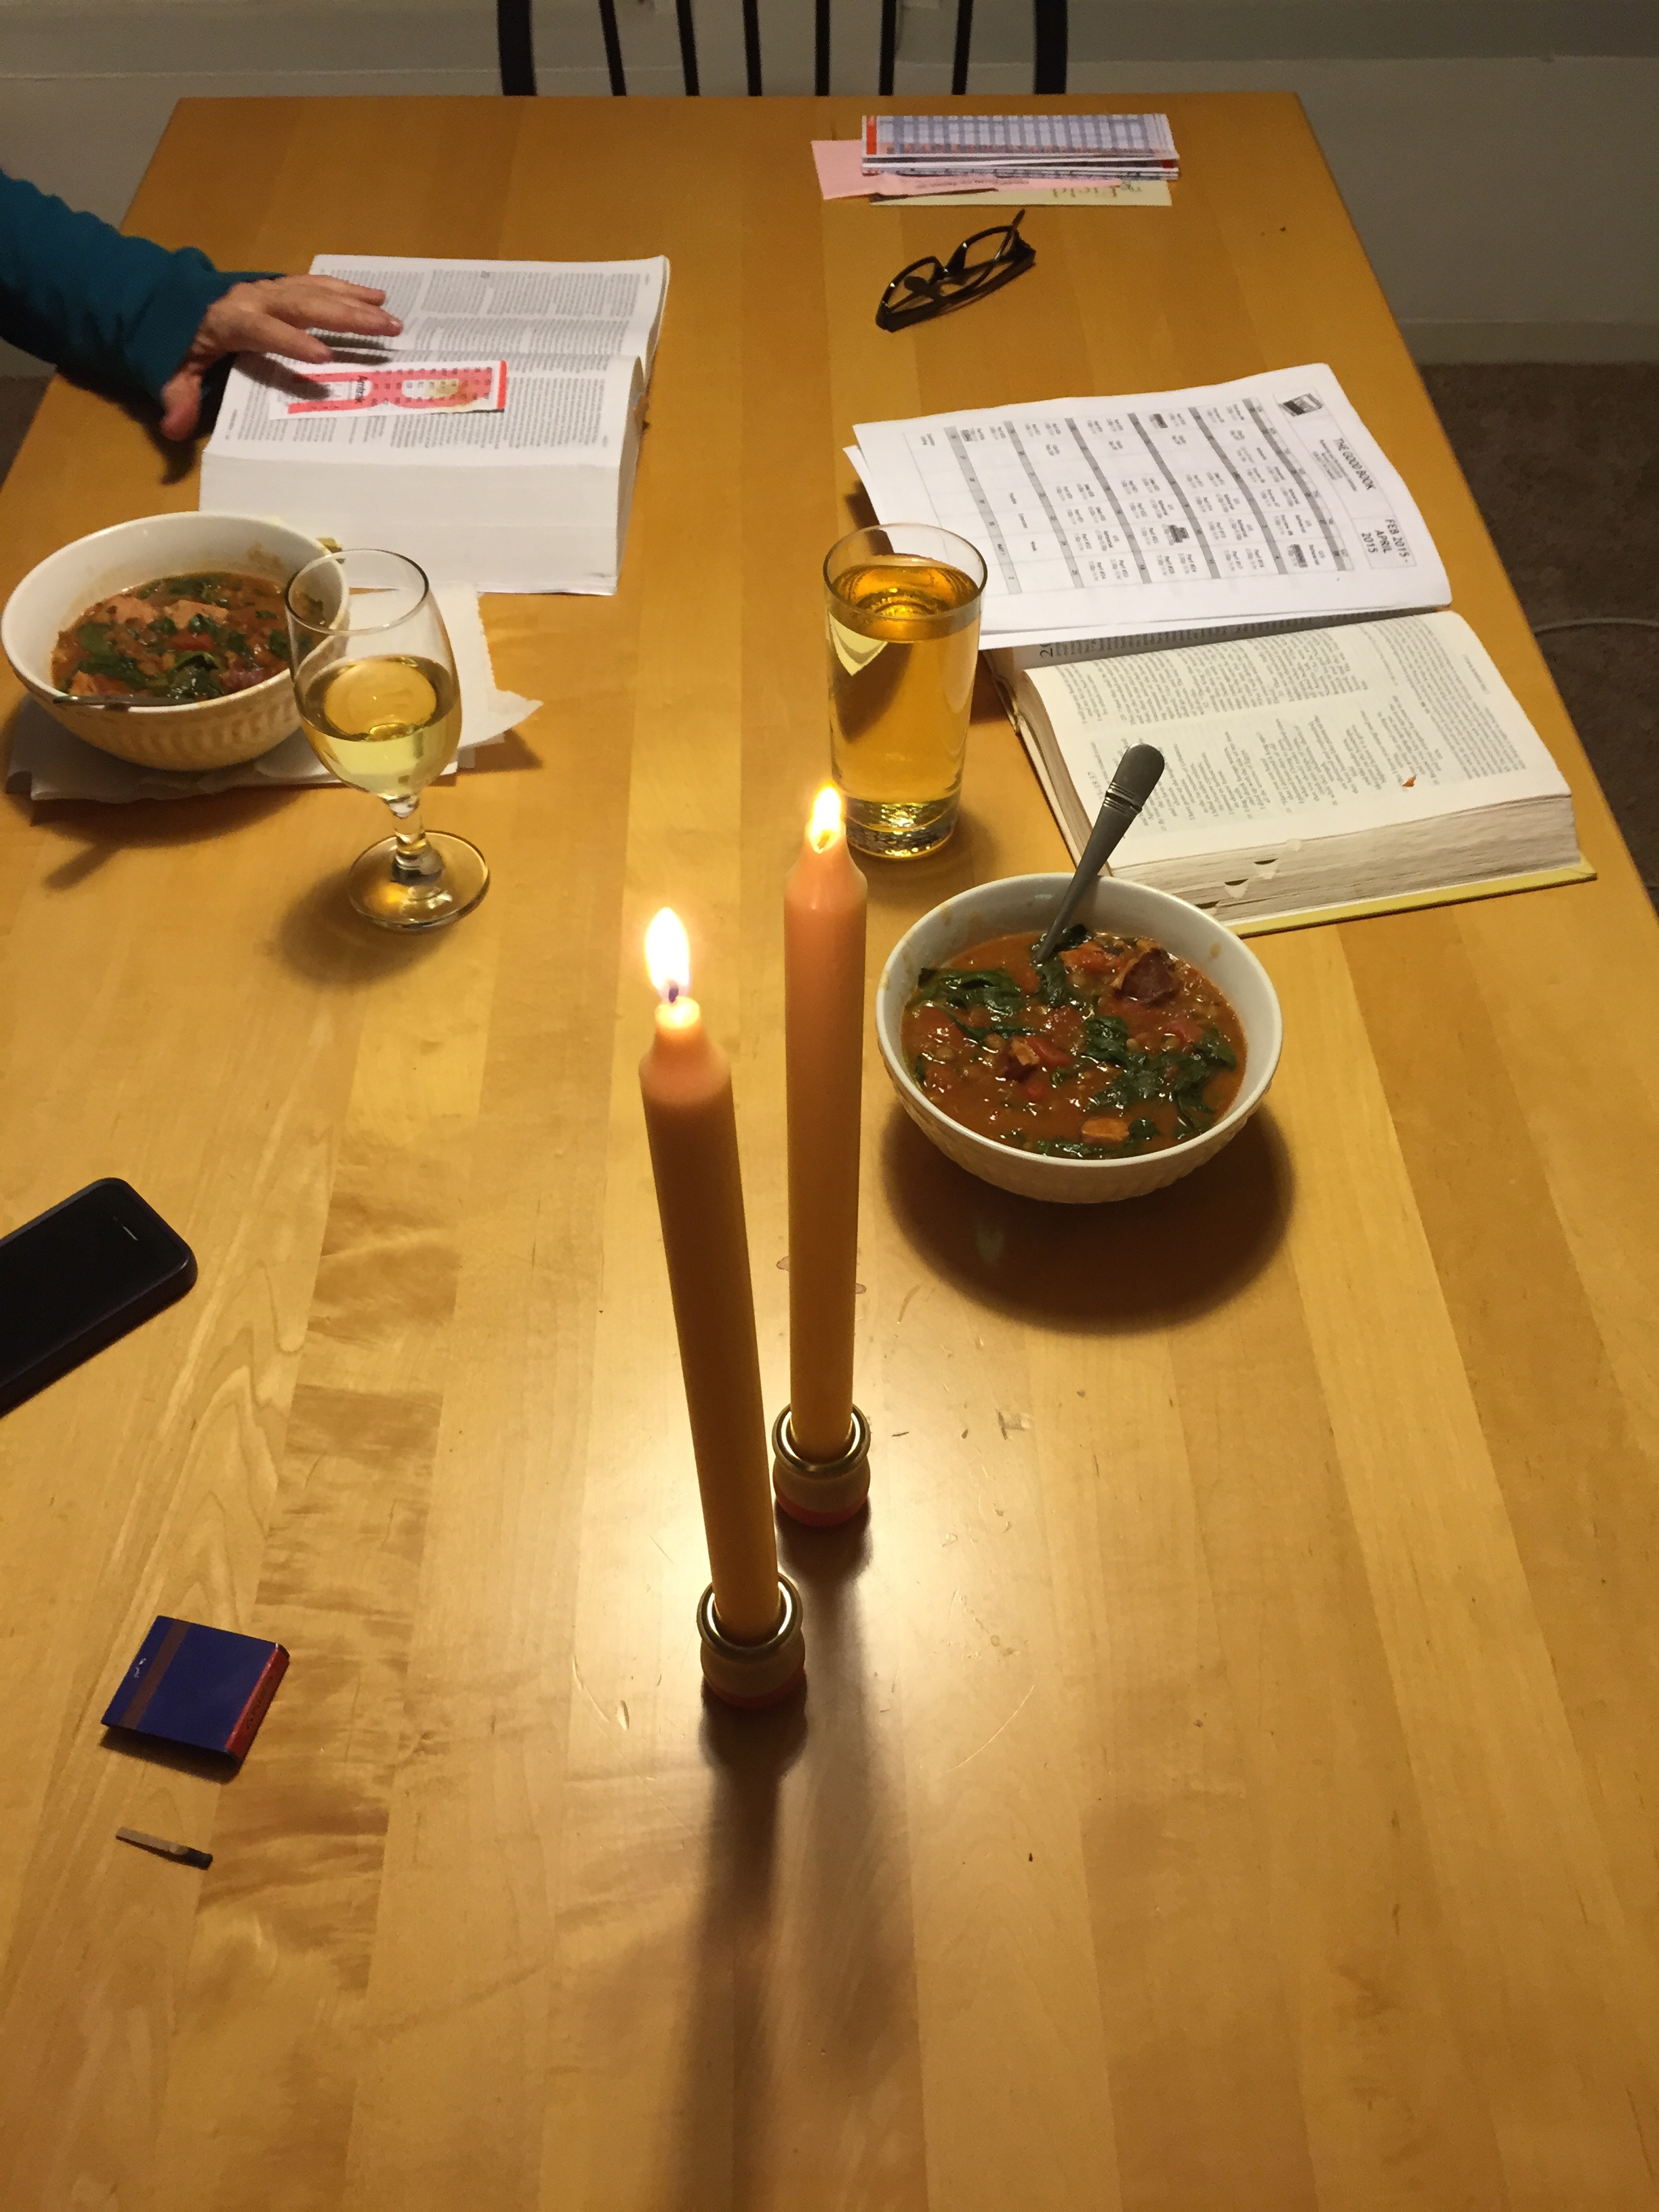  Just a little bible and lentil soup. 